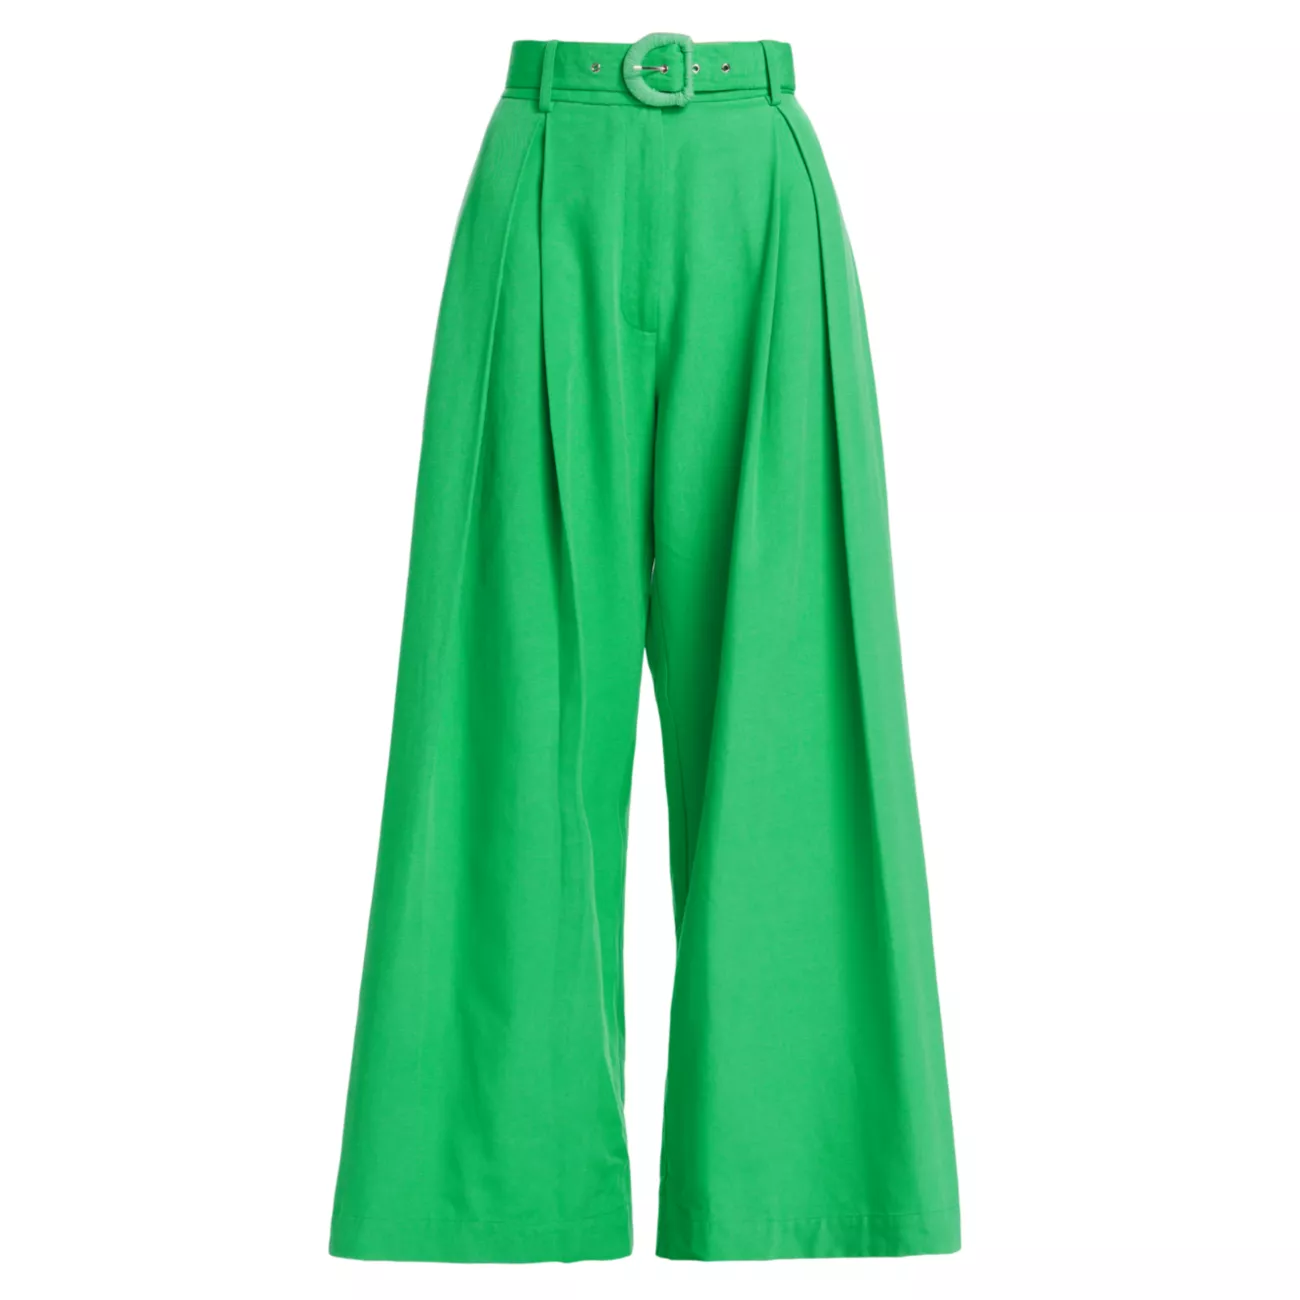 Индивидуальные брюки со складками спереди Farm Rio